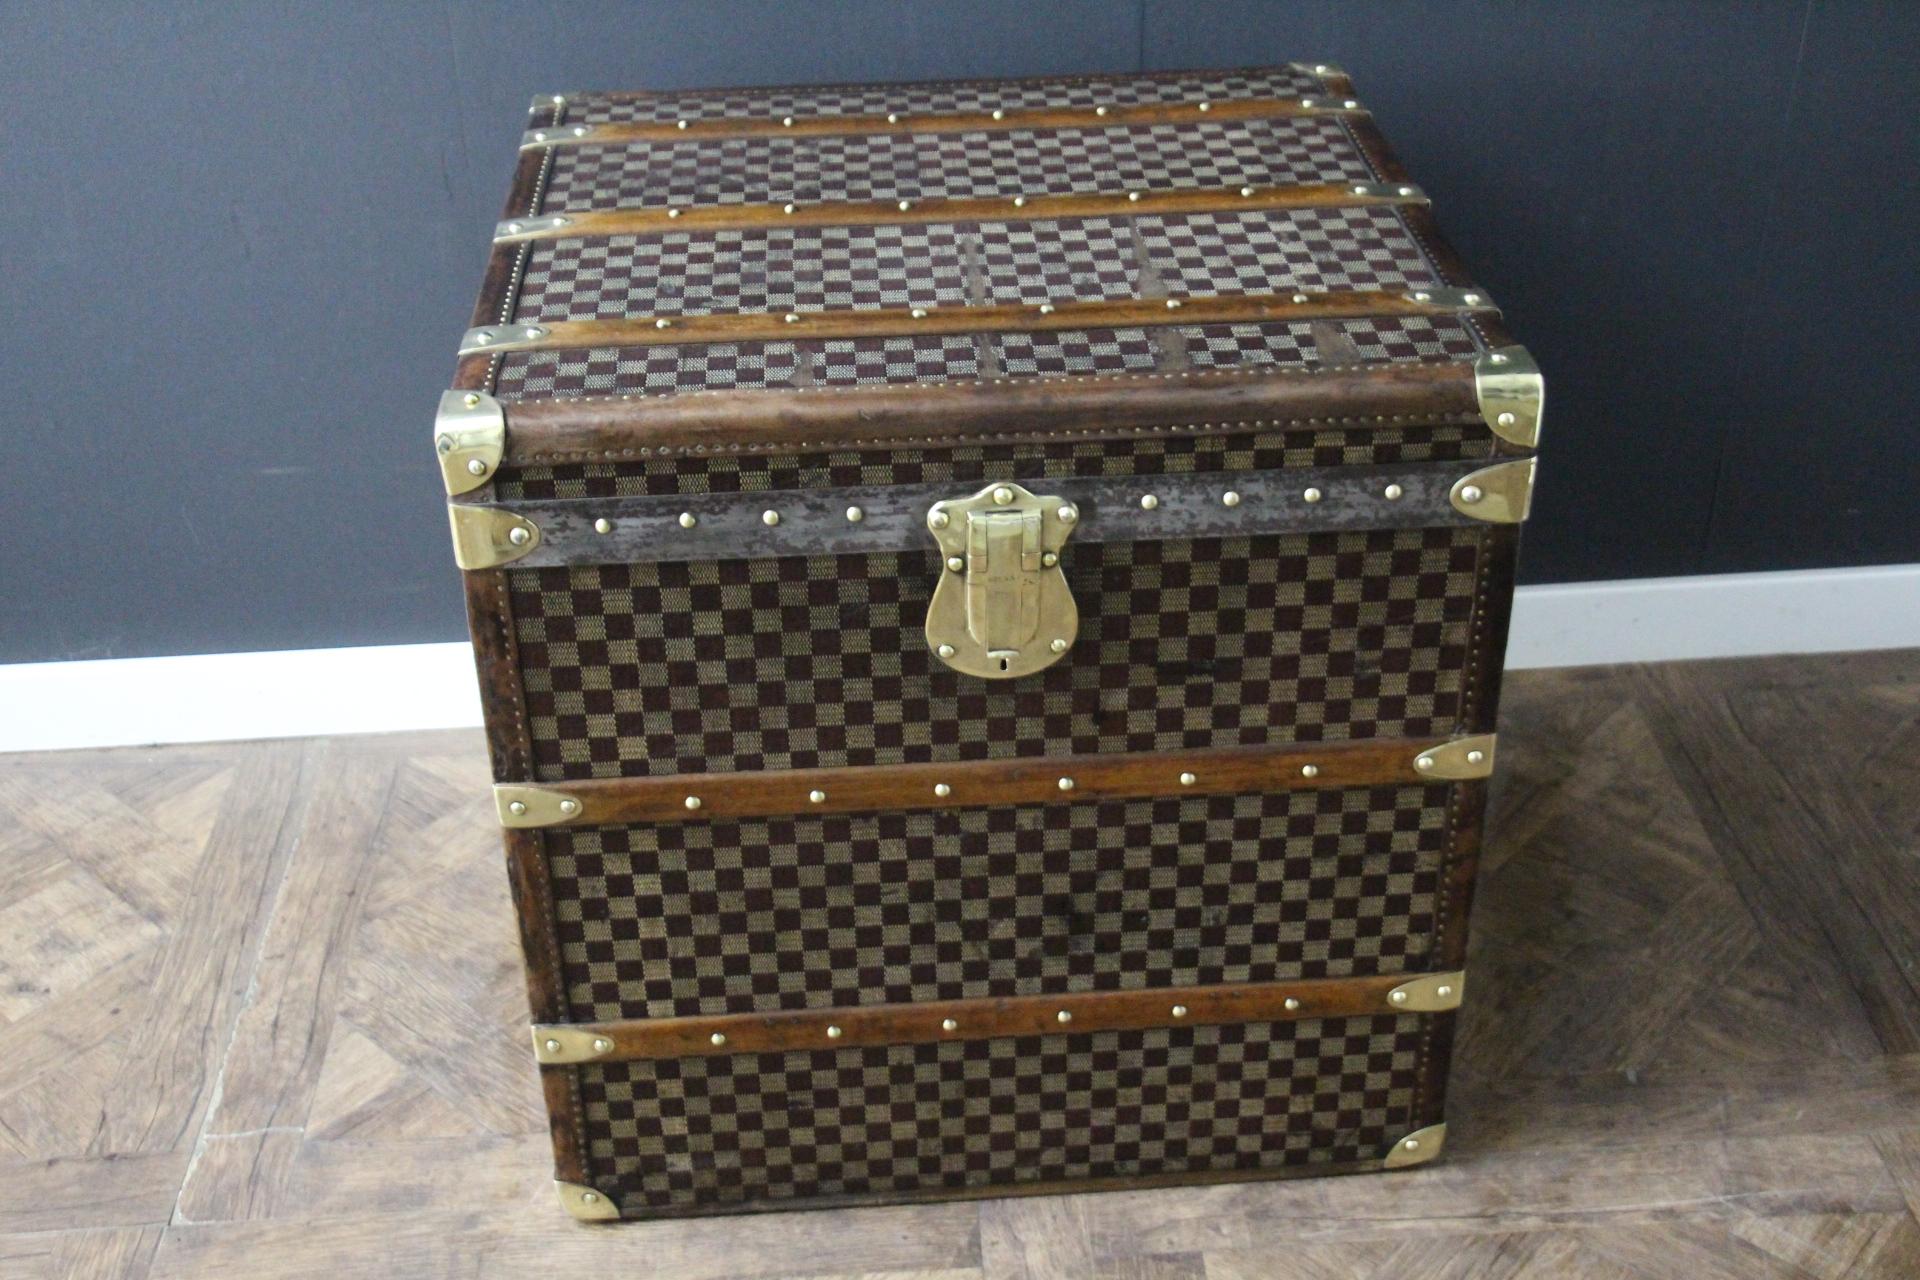 Diese schöne und sehr seltene Moynat Koffer verfügt über schöne Karos Leinwand, Schokolade Farbe Leder trimmen, große Leder Seitengriffe mit gestempelten Moynat Flansche und solide Messing gestempelt Moynat Schloss. Seine Patina ist wunderschön.